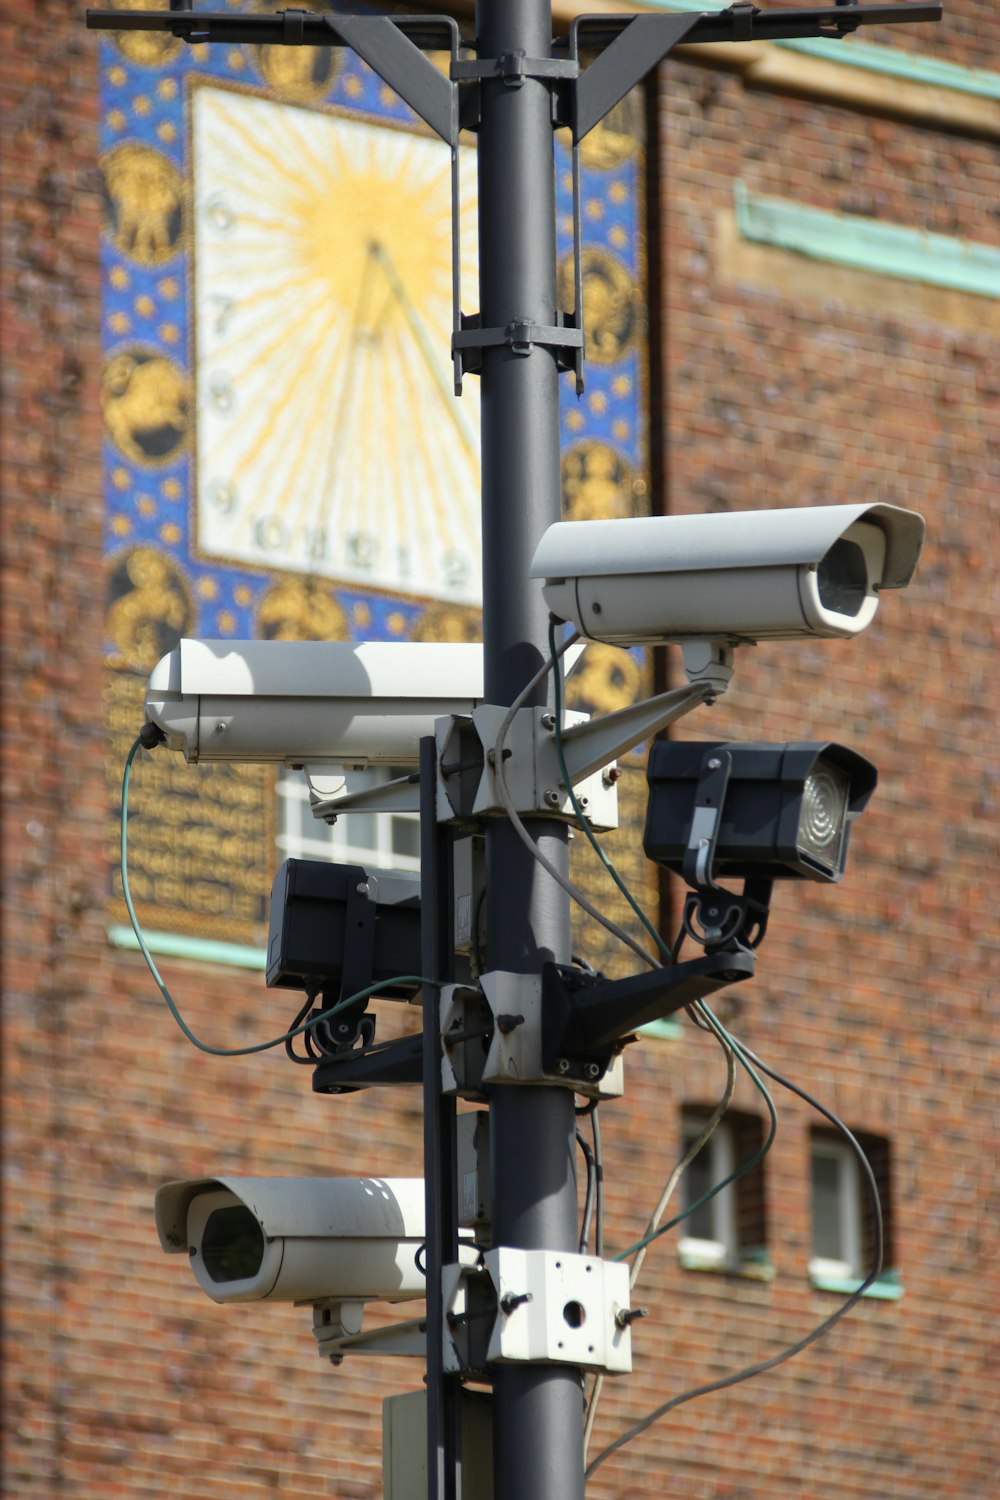 security cameras on pole